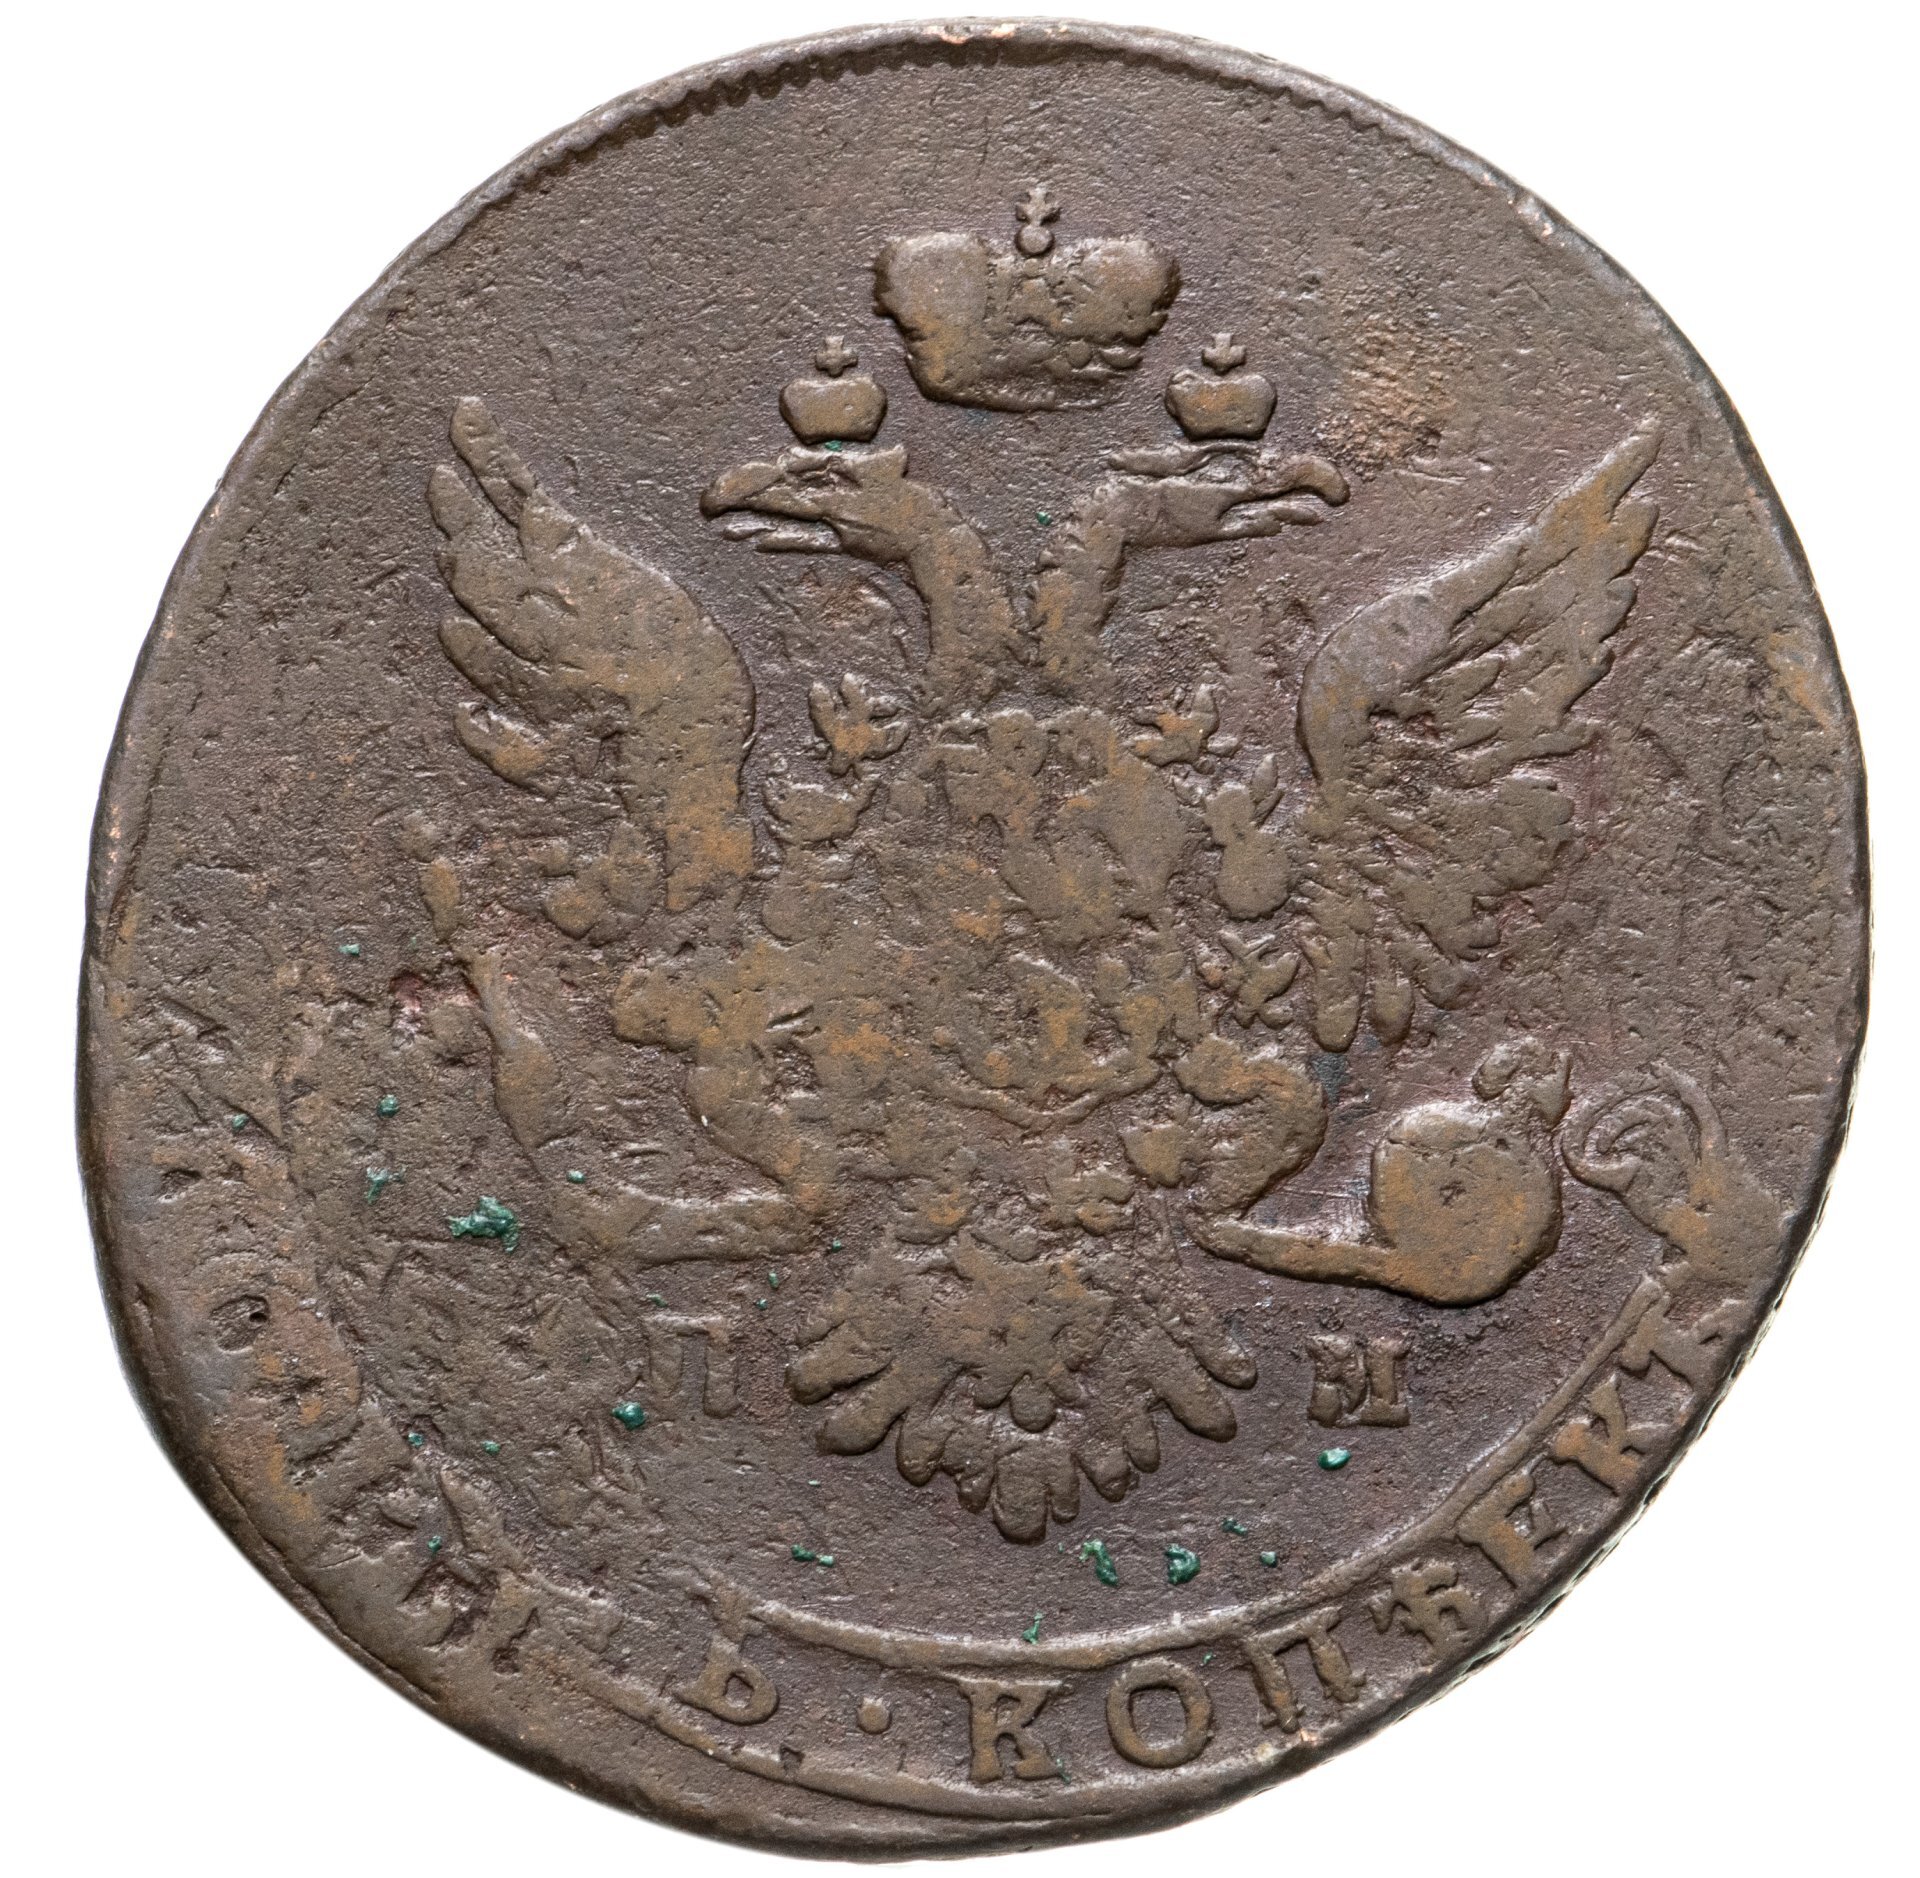 5 копеек 1763. Стоящие монеты. Копейка монета фото.